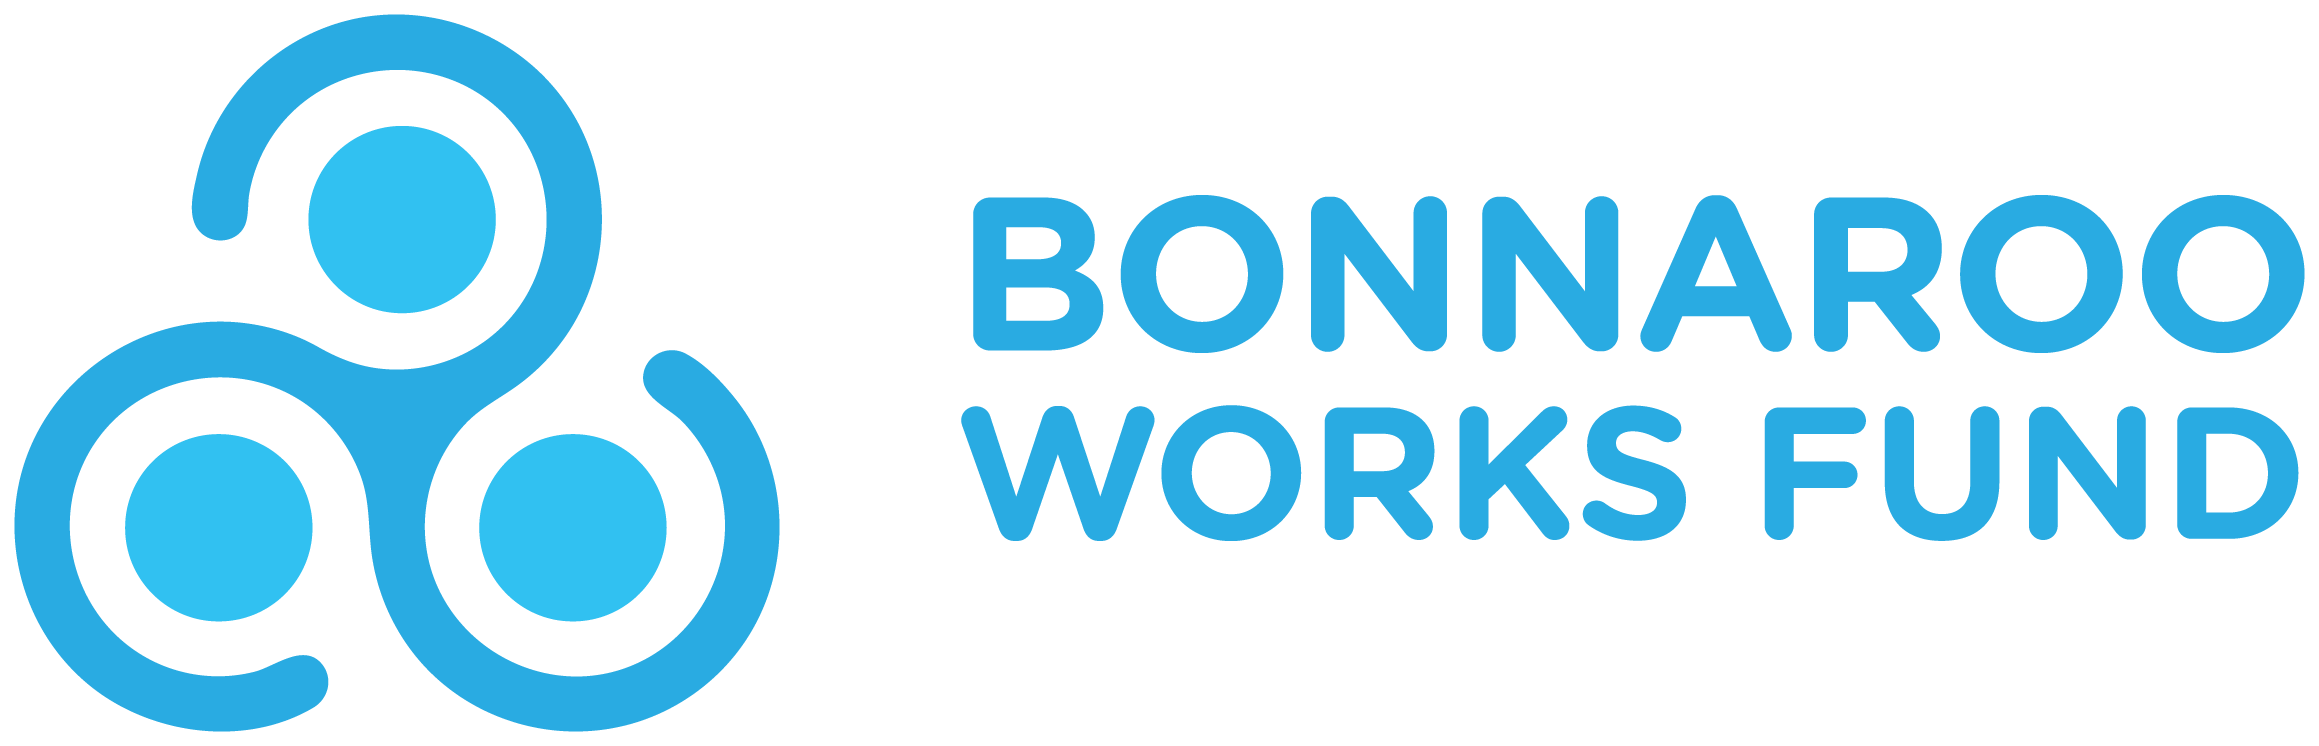 Bonnaroo Works Fund logo